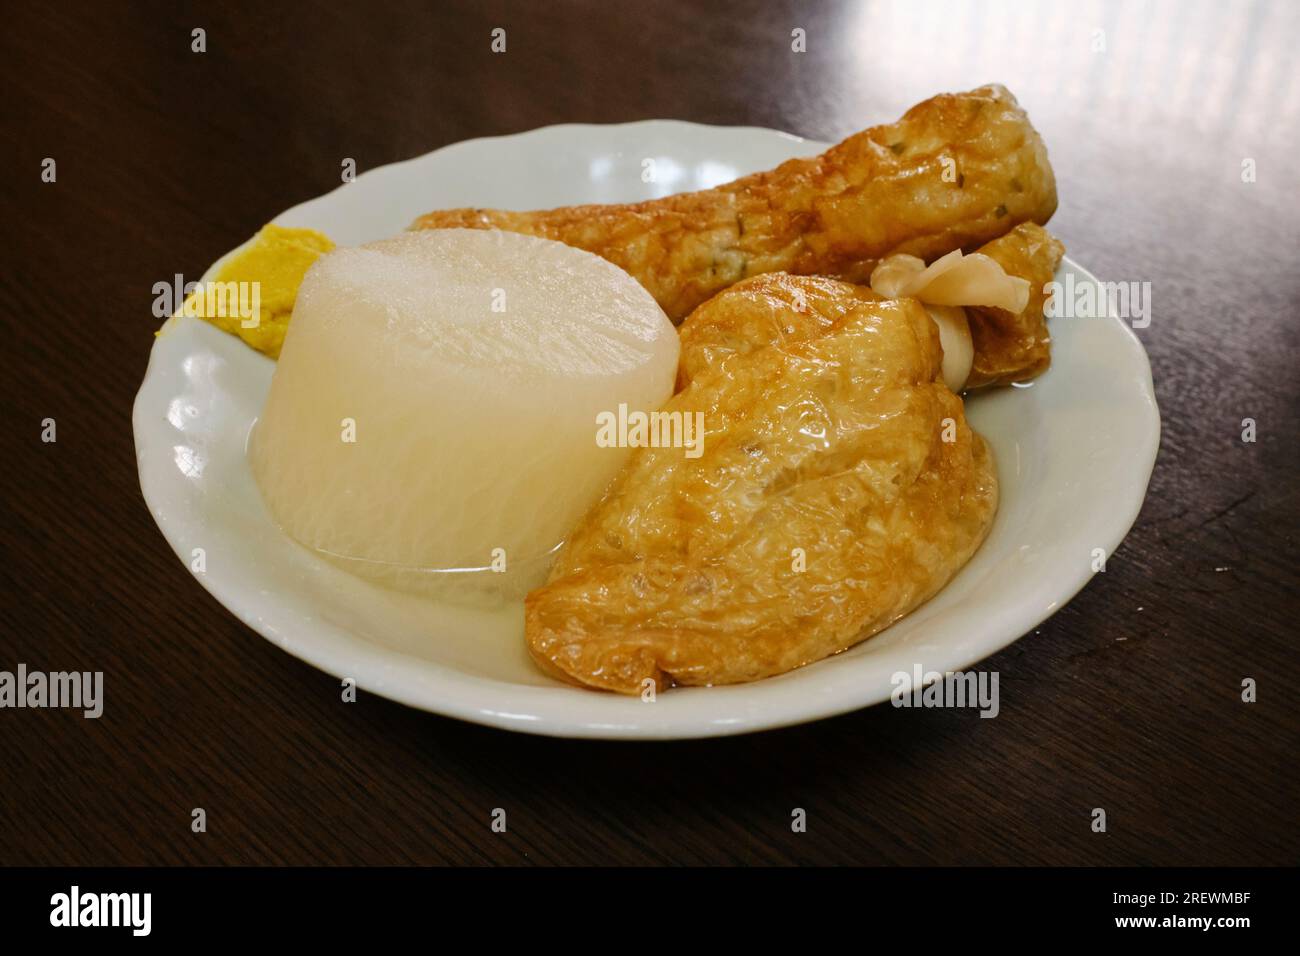 Juin 2023, Oden, un ragoût d'hiver composé d'un assortiment d'ingrédients tels que des œufs durs, du radis (daikon) et des gâteaux de poisson transformés dans un bouillon de tableau de bord Banque D'Images